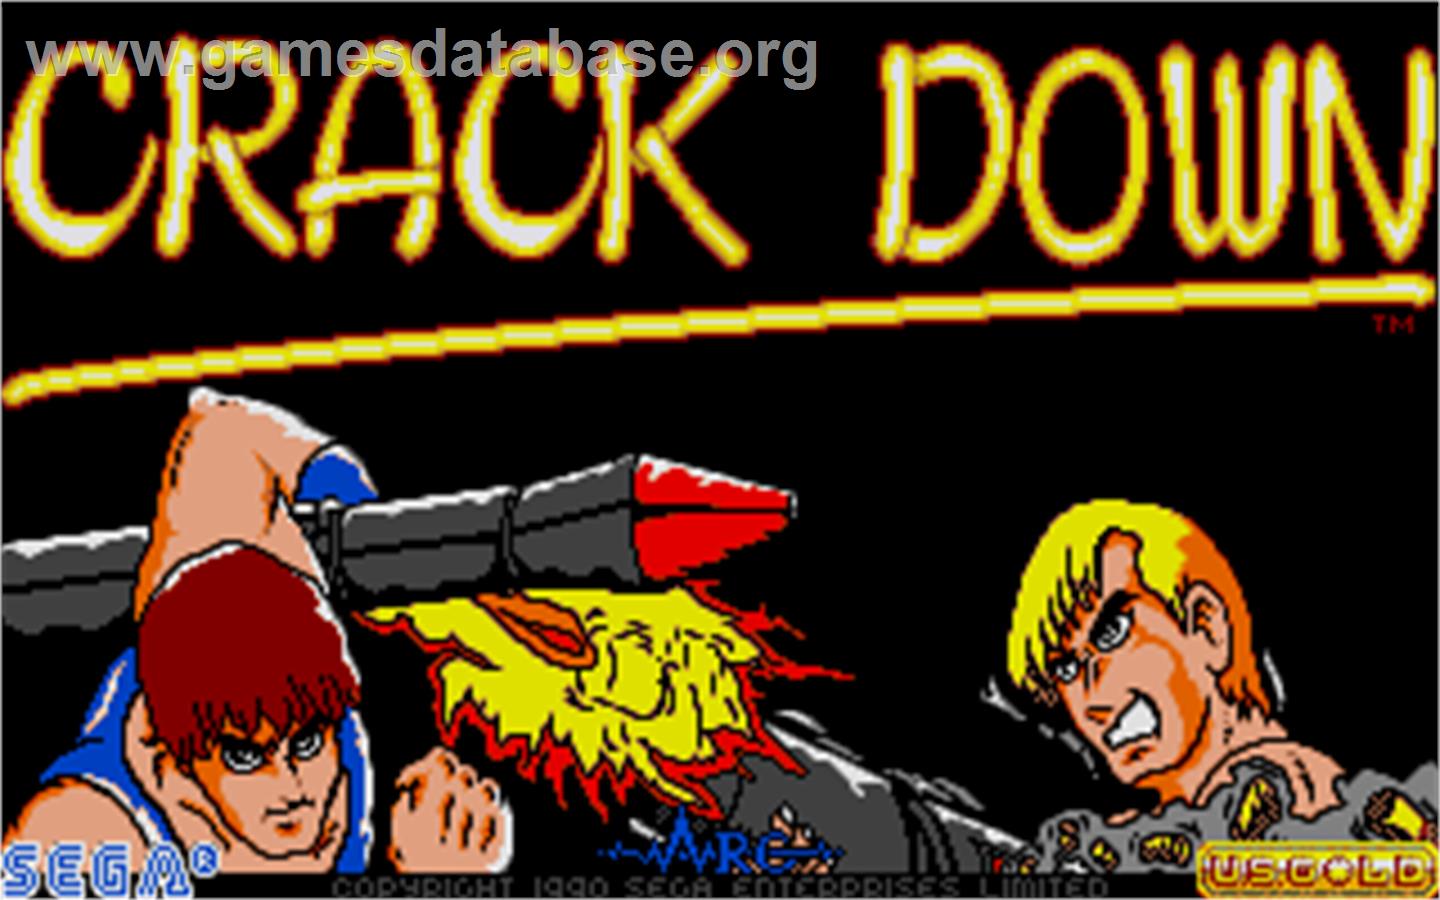 Crack Down - Atari ST - Artwork - Title Screen